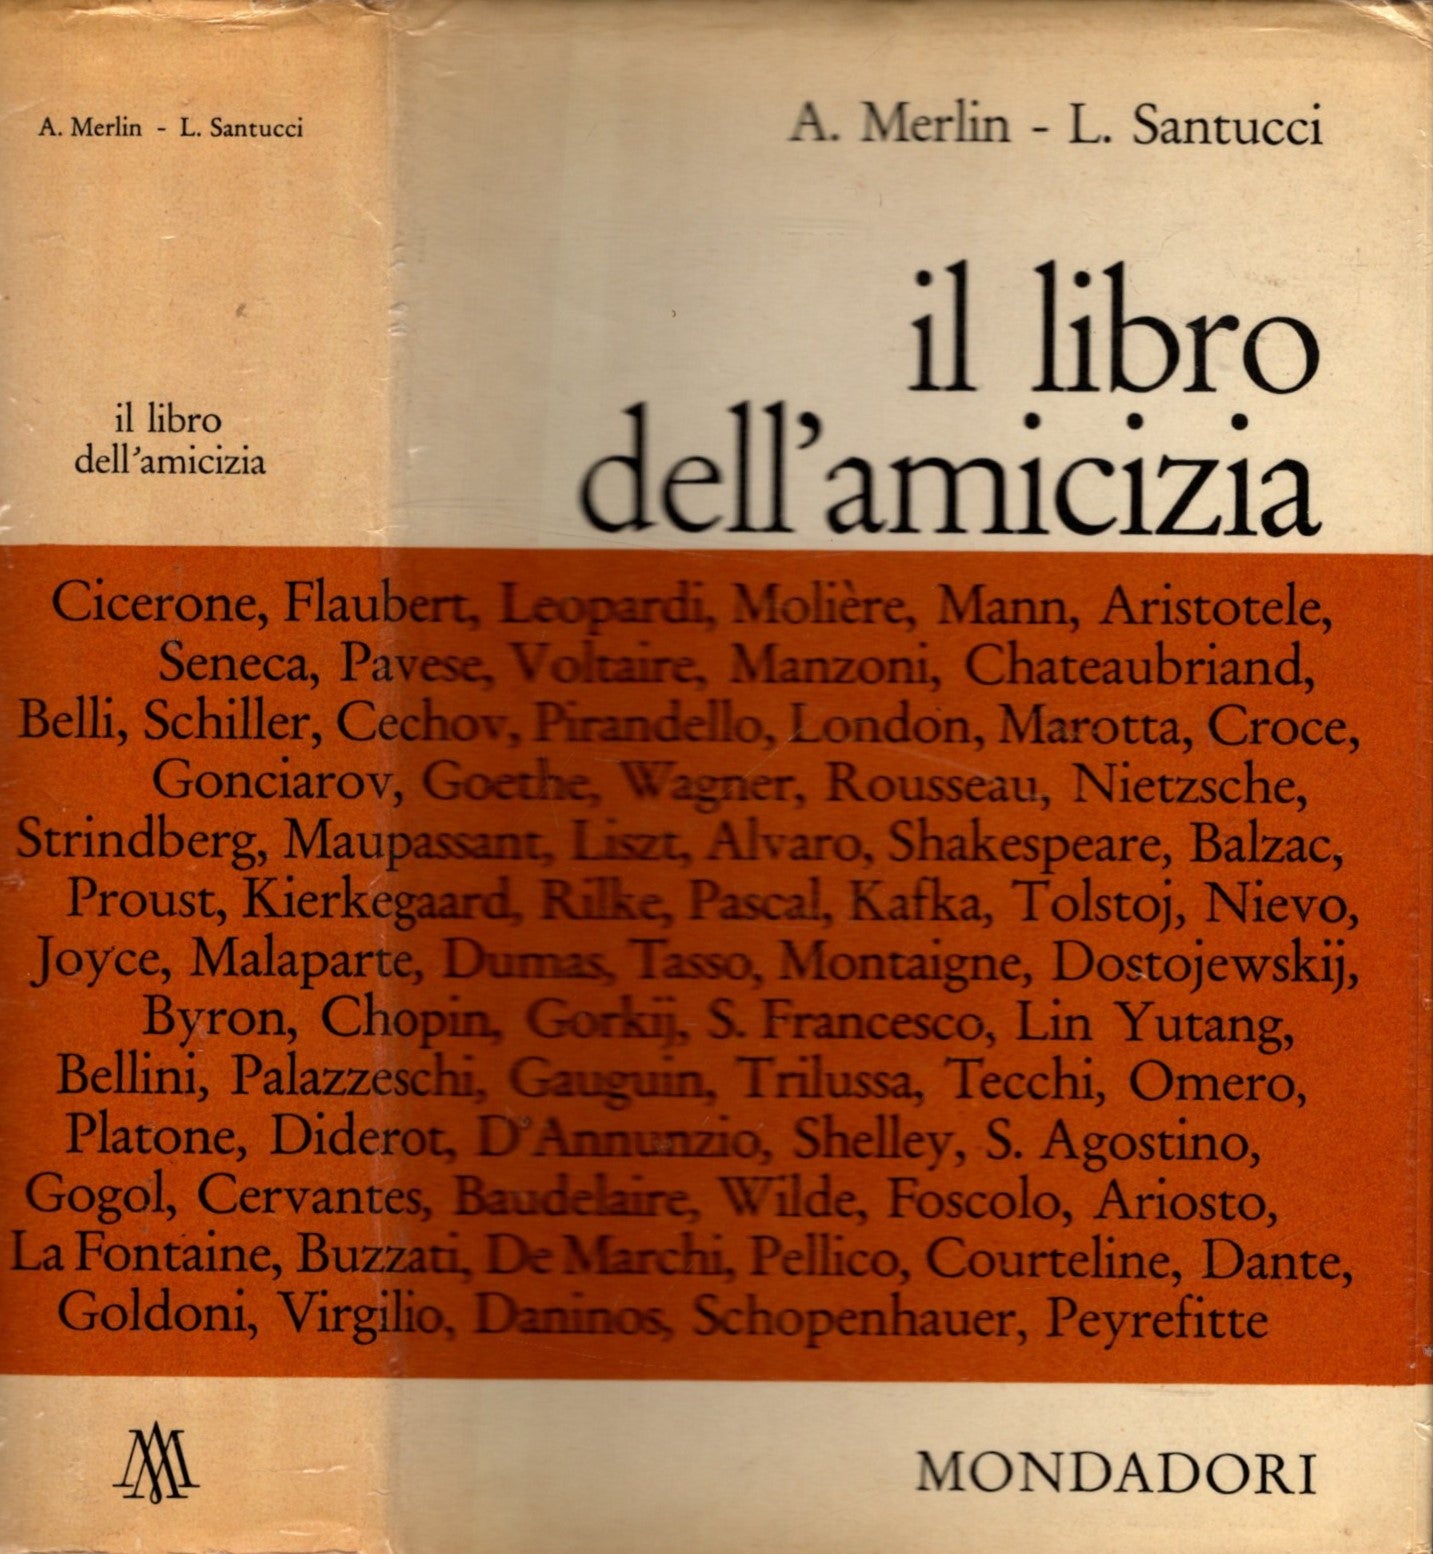 IL LIBRO DELL'AMICIZIA -  L. SANTUCCI, A. MERLIN